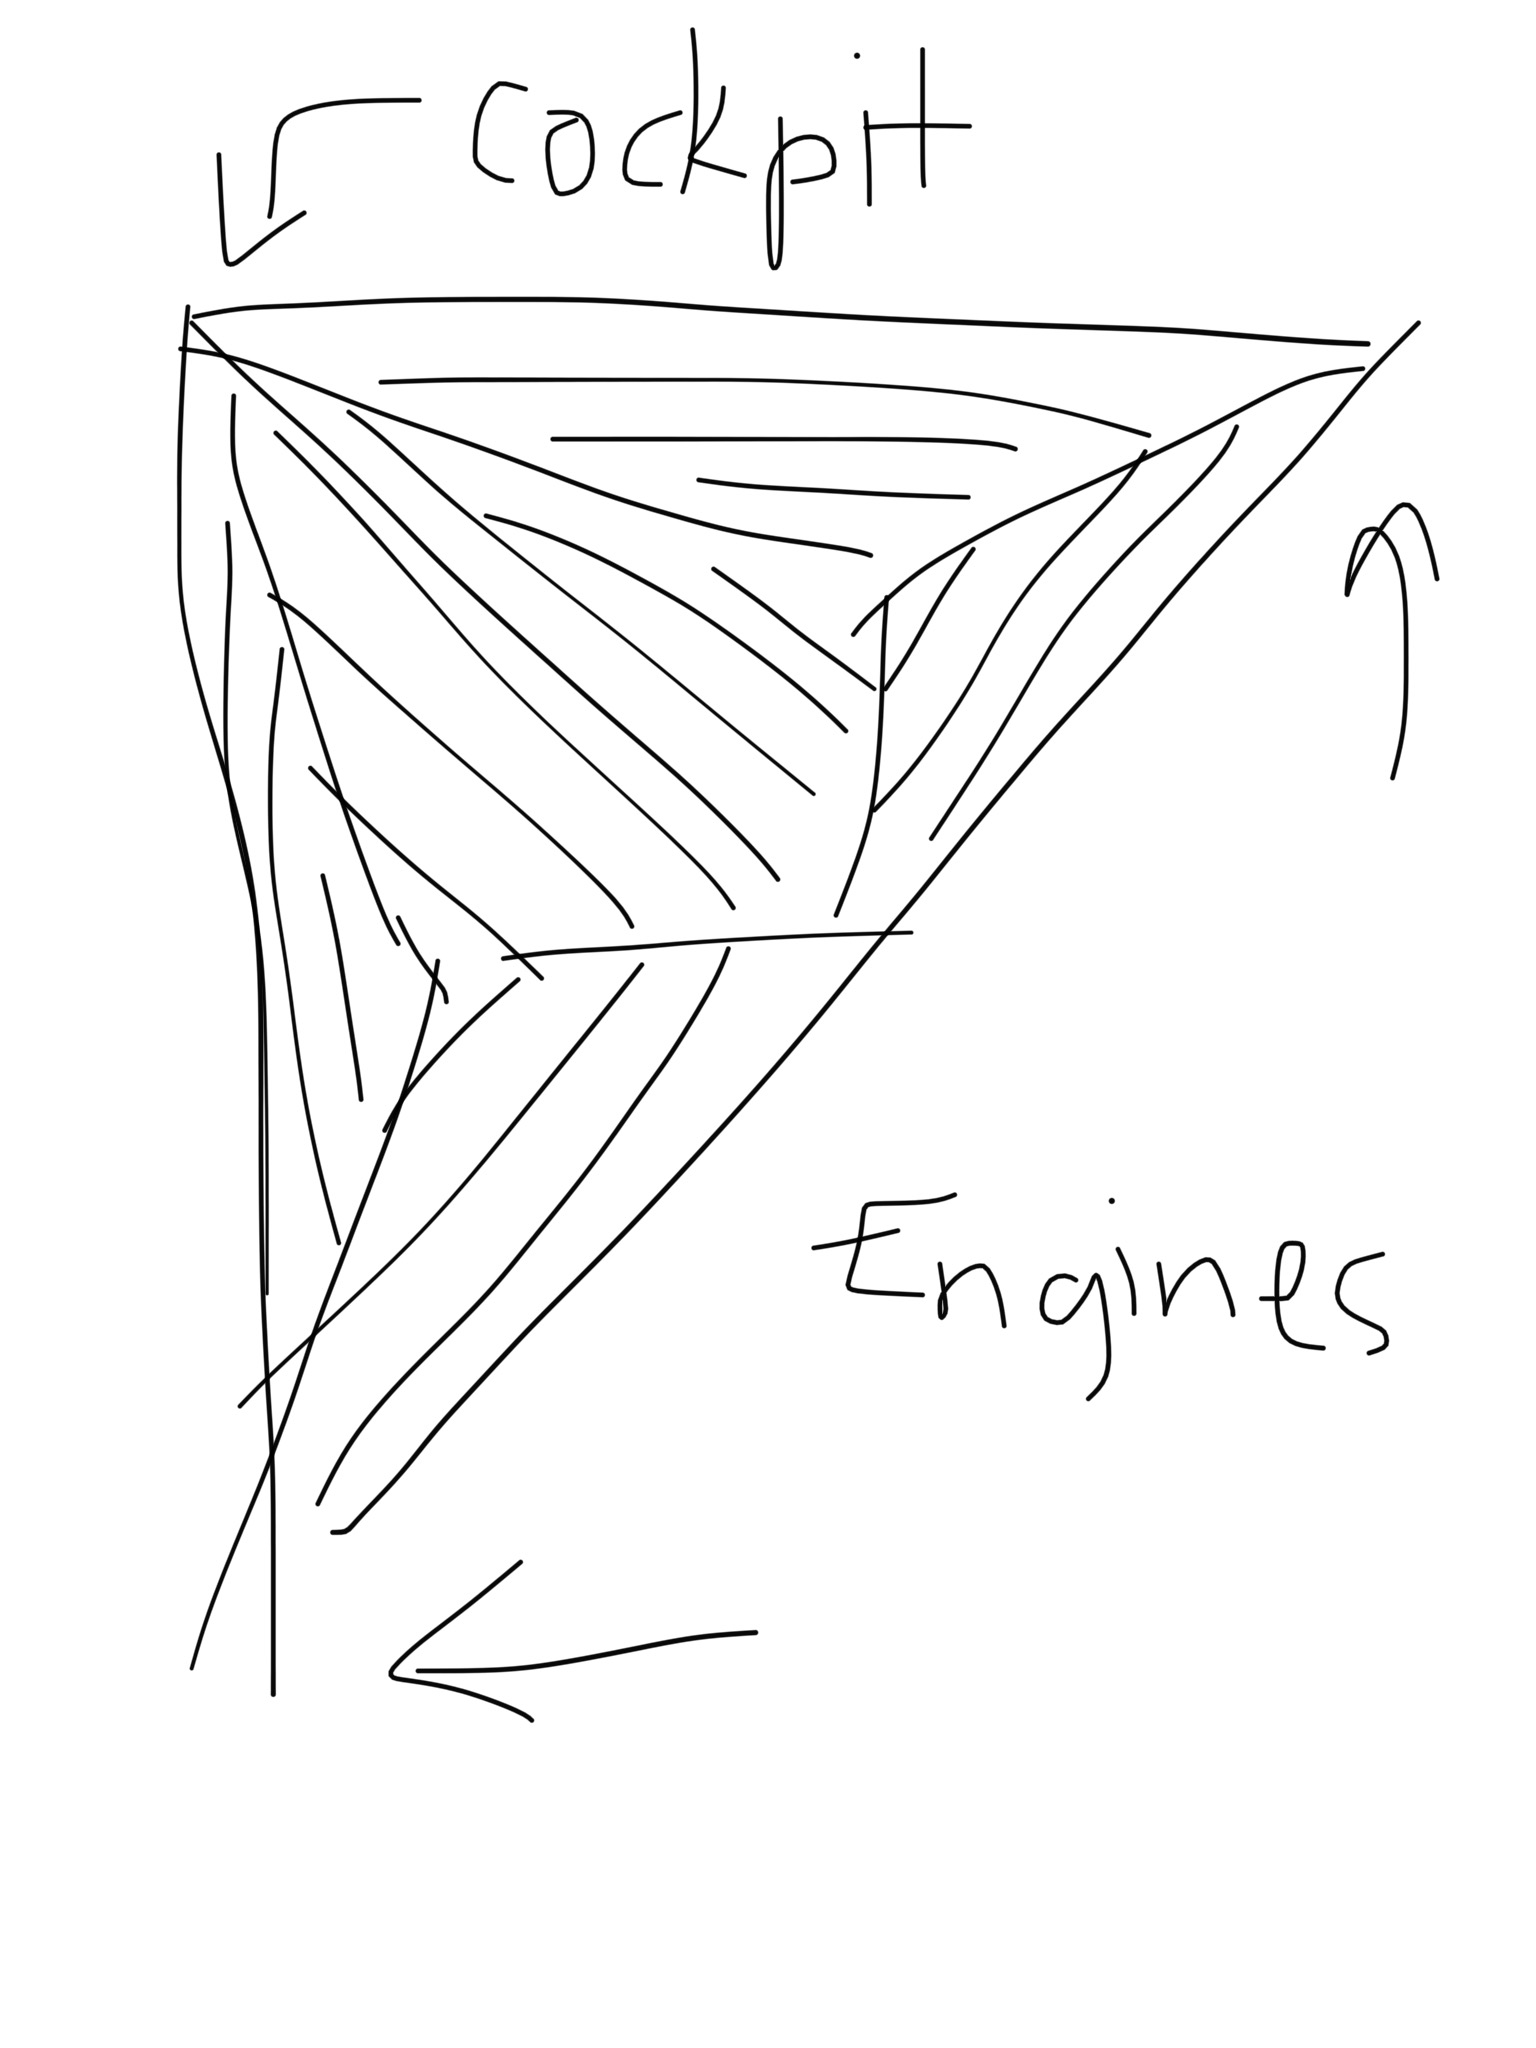 Right triangle concept